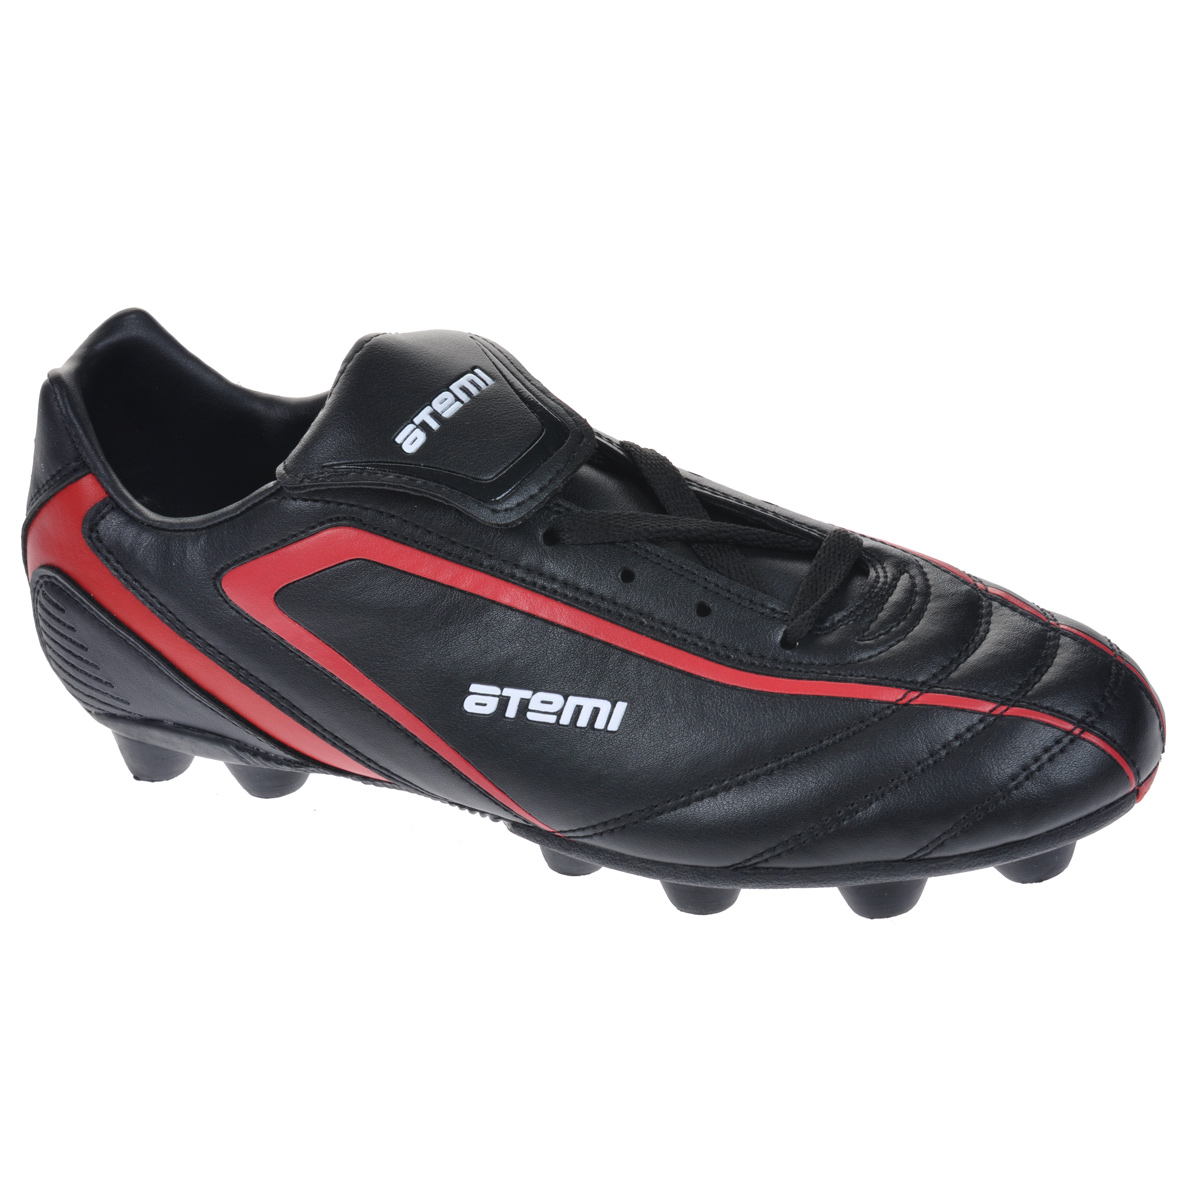 Бутсы футбольные мужские Atemi MSR, 14 шипов, цвет: черный, красный. SD500. Размер 40